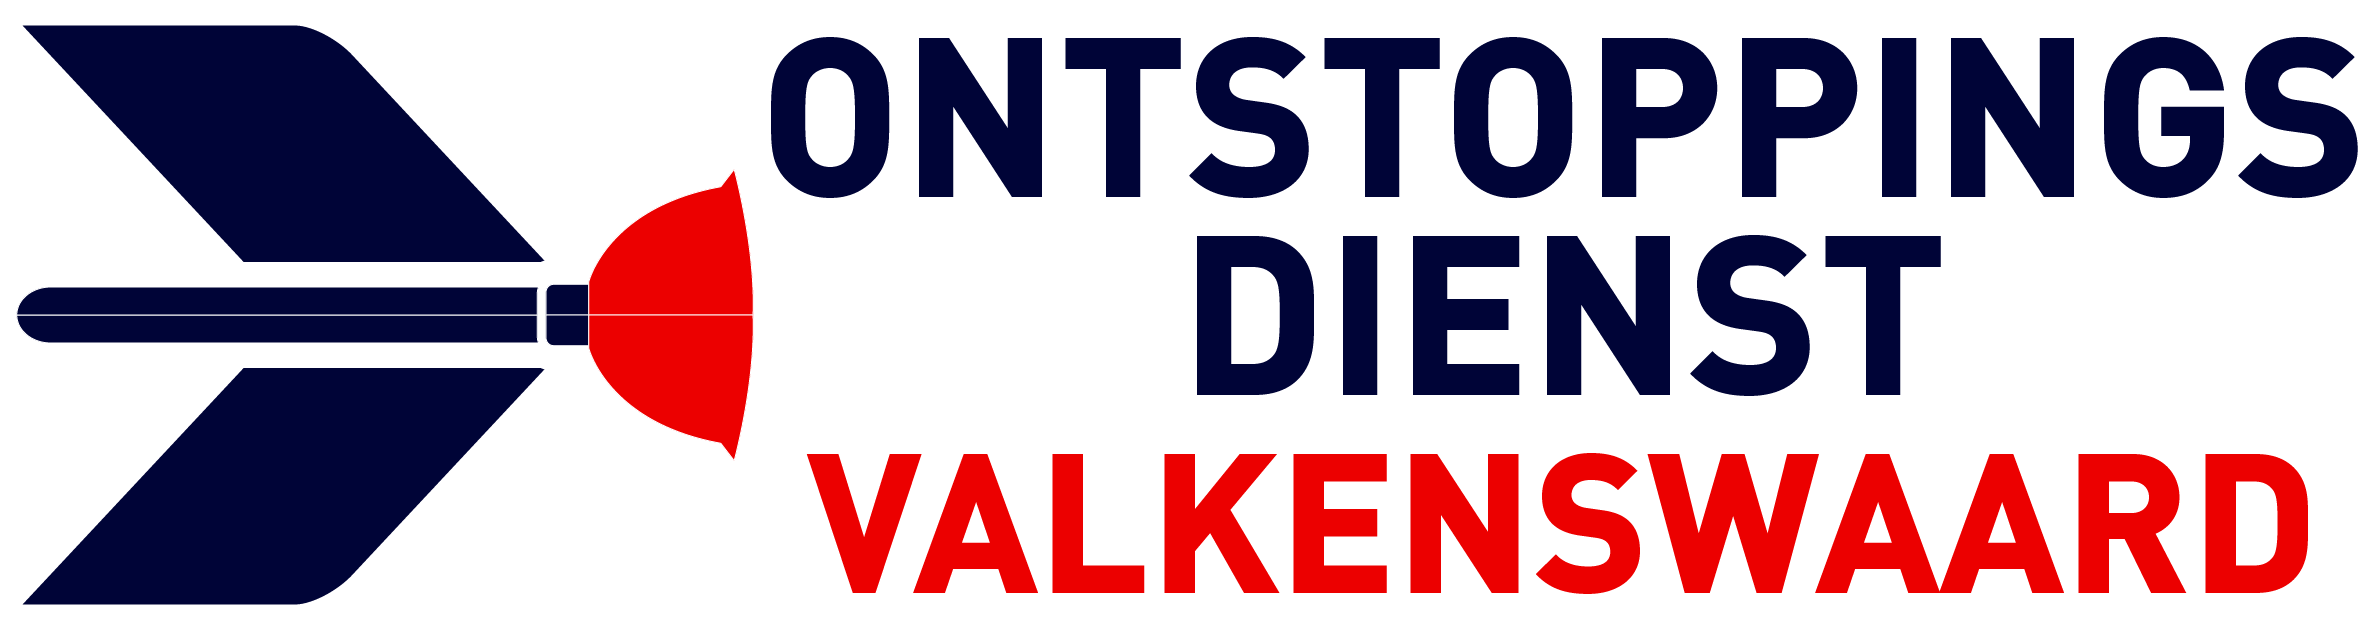 Ontstoppingsdienst Valkenswaard logo